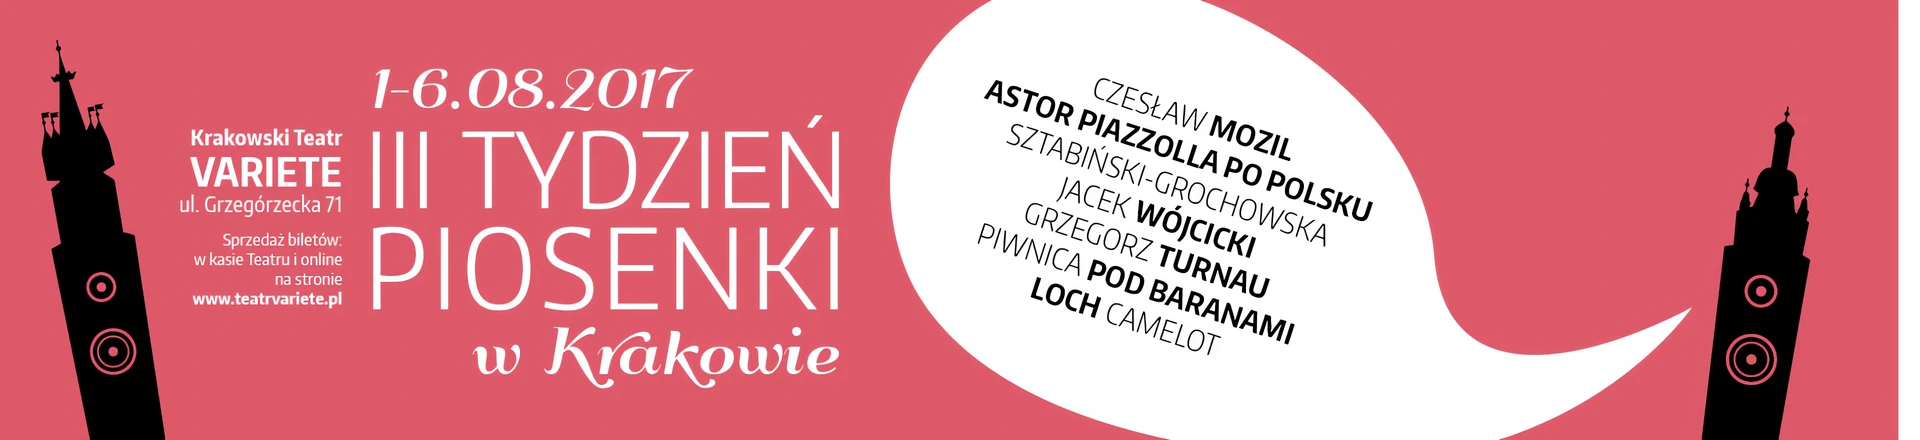 Czesław Mozil - Spowiedź emigranta na 3 Tygodniu Piosenki w Krakowie (relacja)